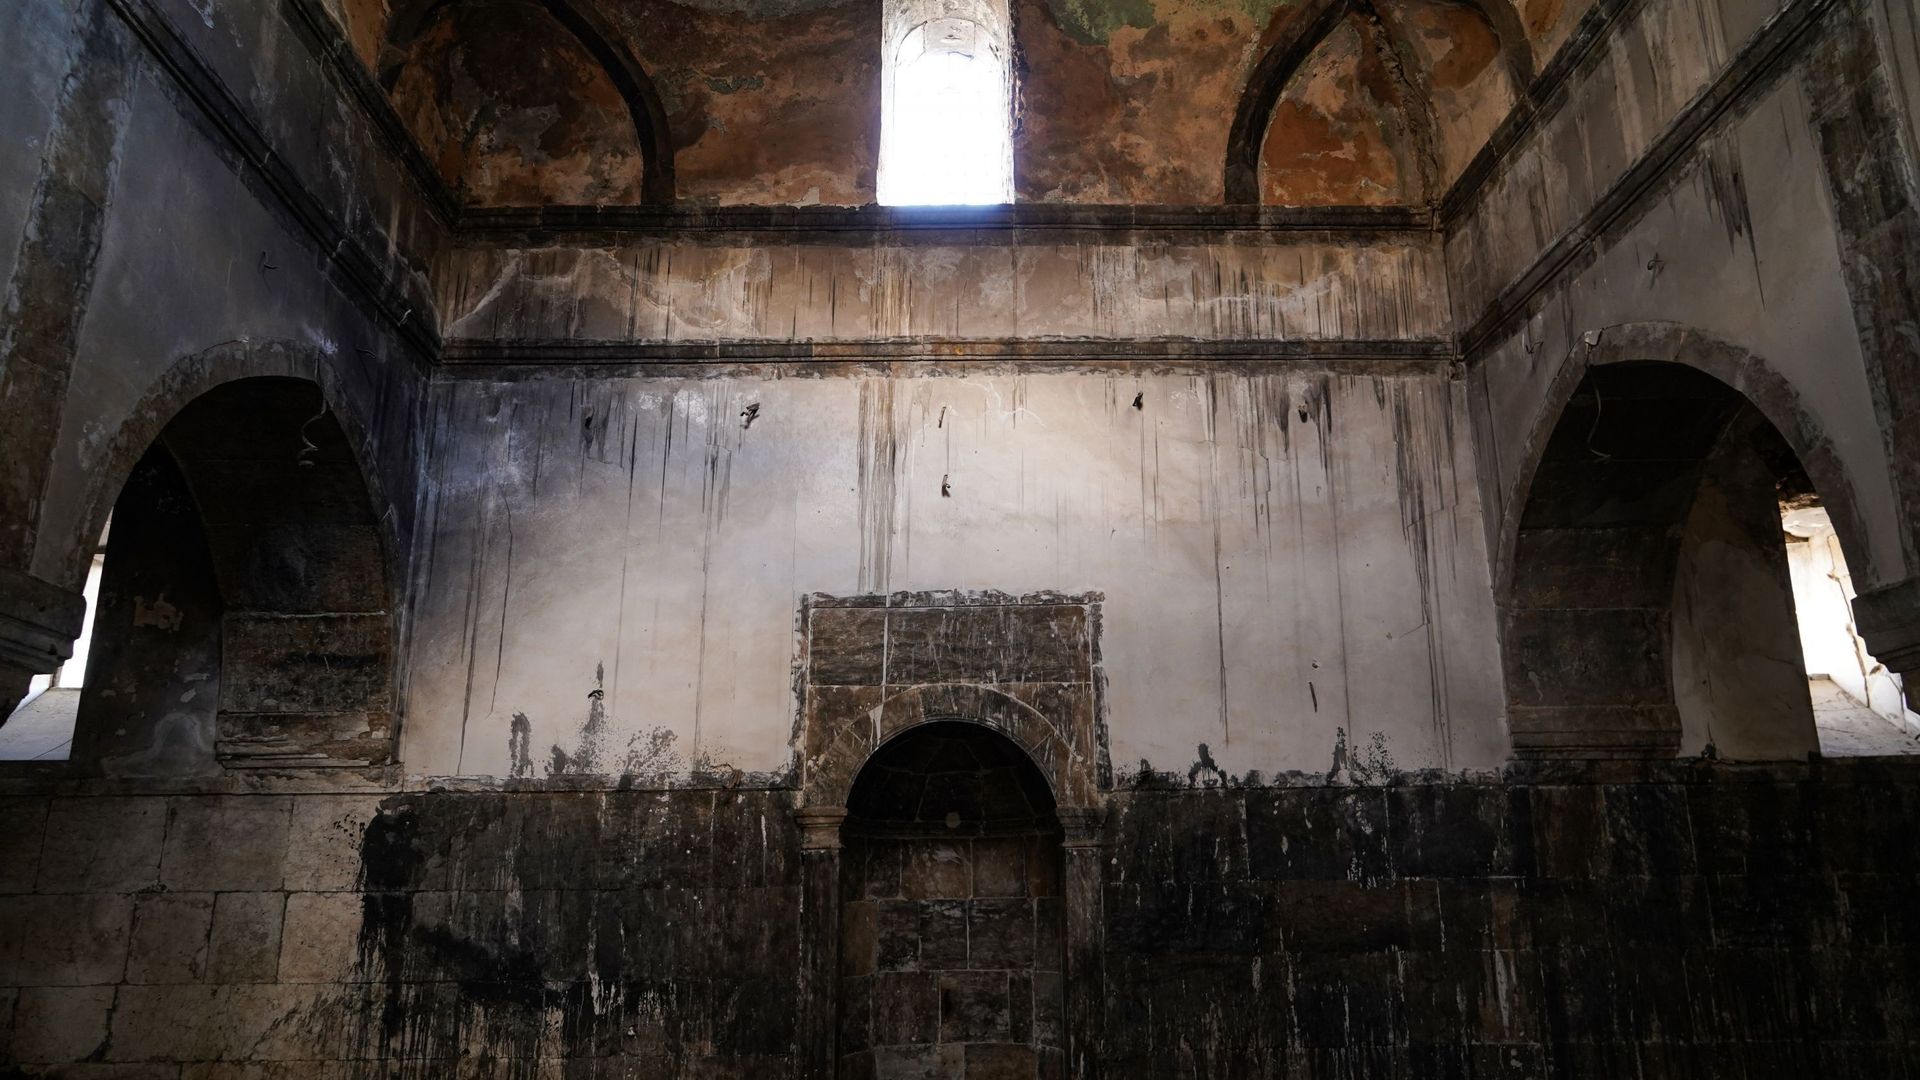 Vue de l’intérieur de la mosquée endommagée des Omeyyades (Al-Masfe) qui est située dans le vieux quartier de la ville de Mossoul. Elle a été construite en 638 après JC et est considérée comme la plus ancienne mosquée de la ville, endommagée pendant la gu